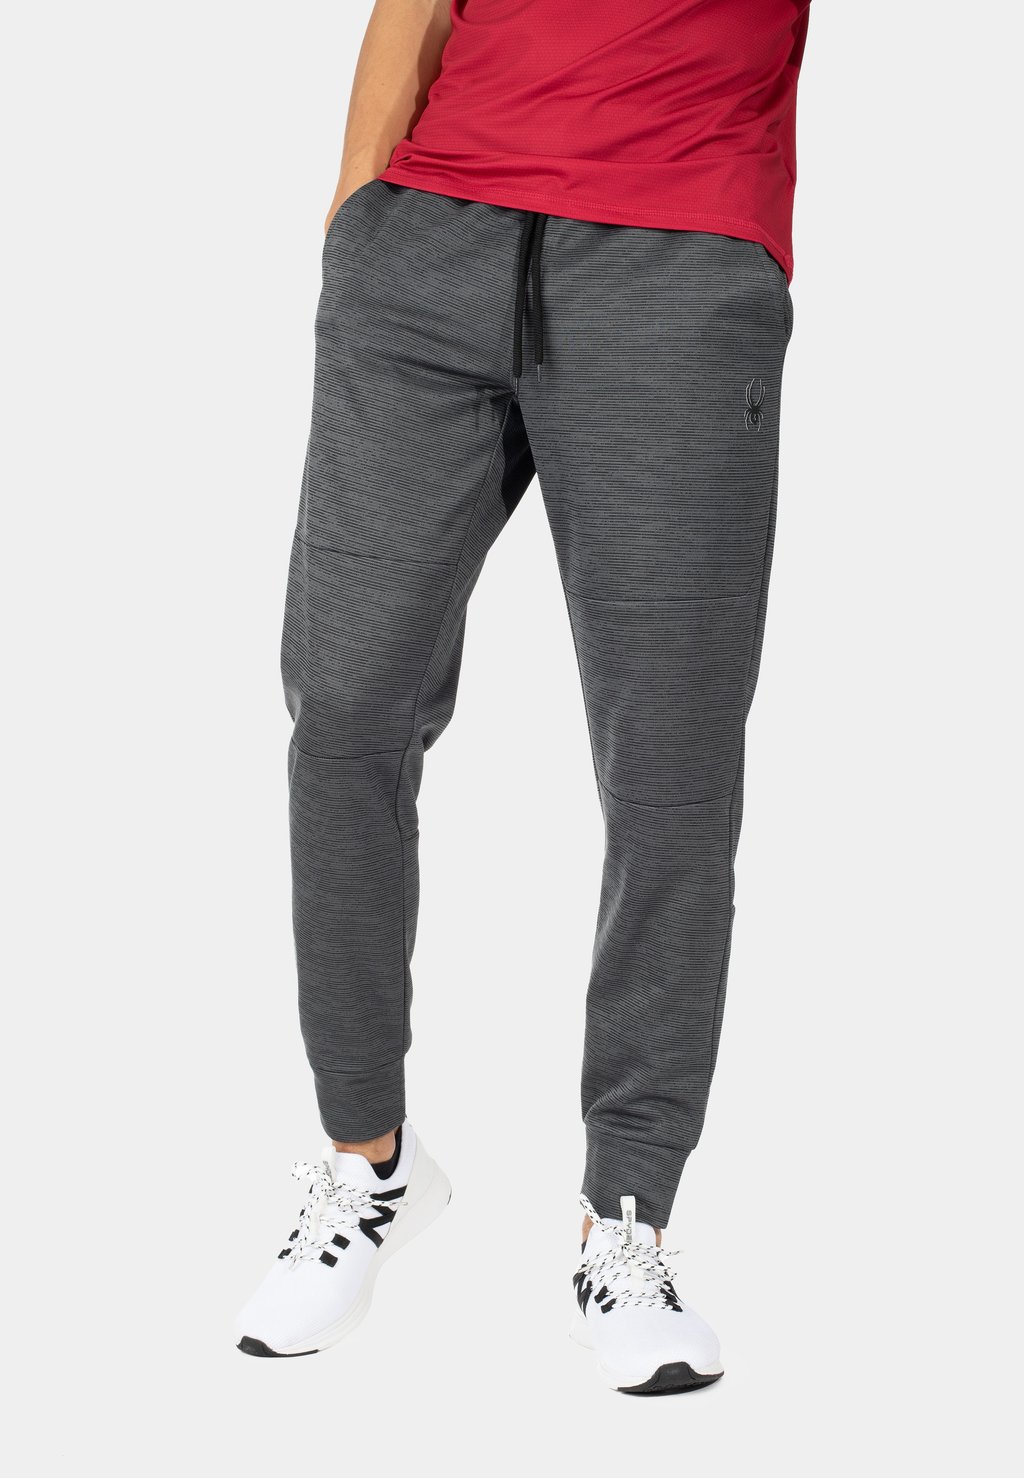 Спортивные брюки Spyder, темно-серые брюки спортивные greyhound утепленные мужские темно серые